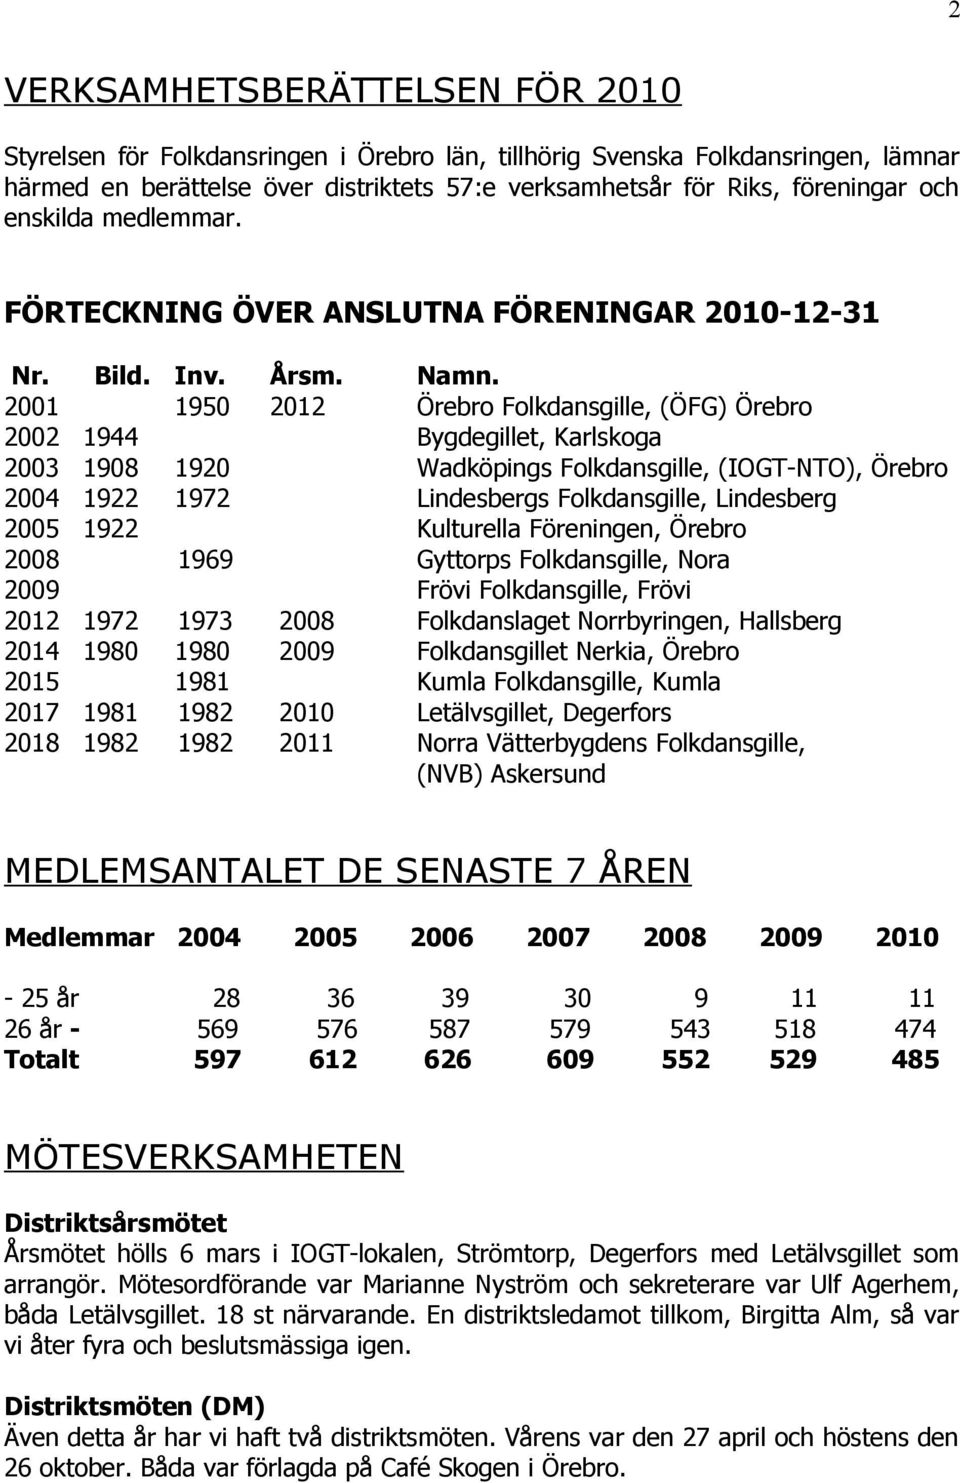 2001 1950 2012 Örebro Folkdansgille, (ÖFG) Örebro 2002 1944 Bygdegillet, Karlskoga 2003 1908 1920 Wadköpings Folkdansgille, (IOGT-NTO), Örebro 2004 1922 1972 Lindesbergs Folkdansgille, Lindesberg